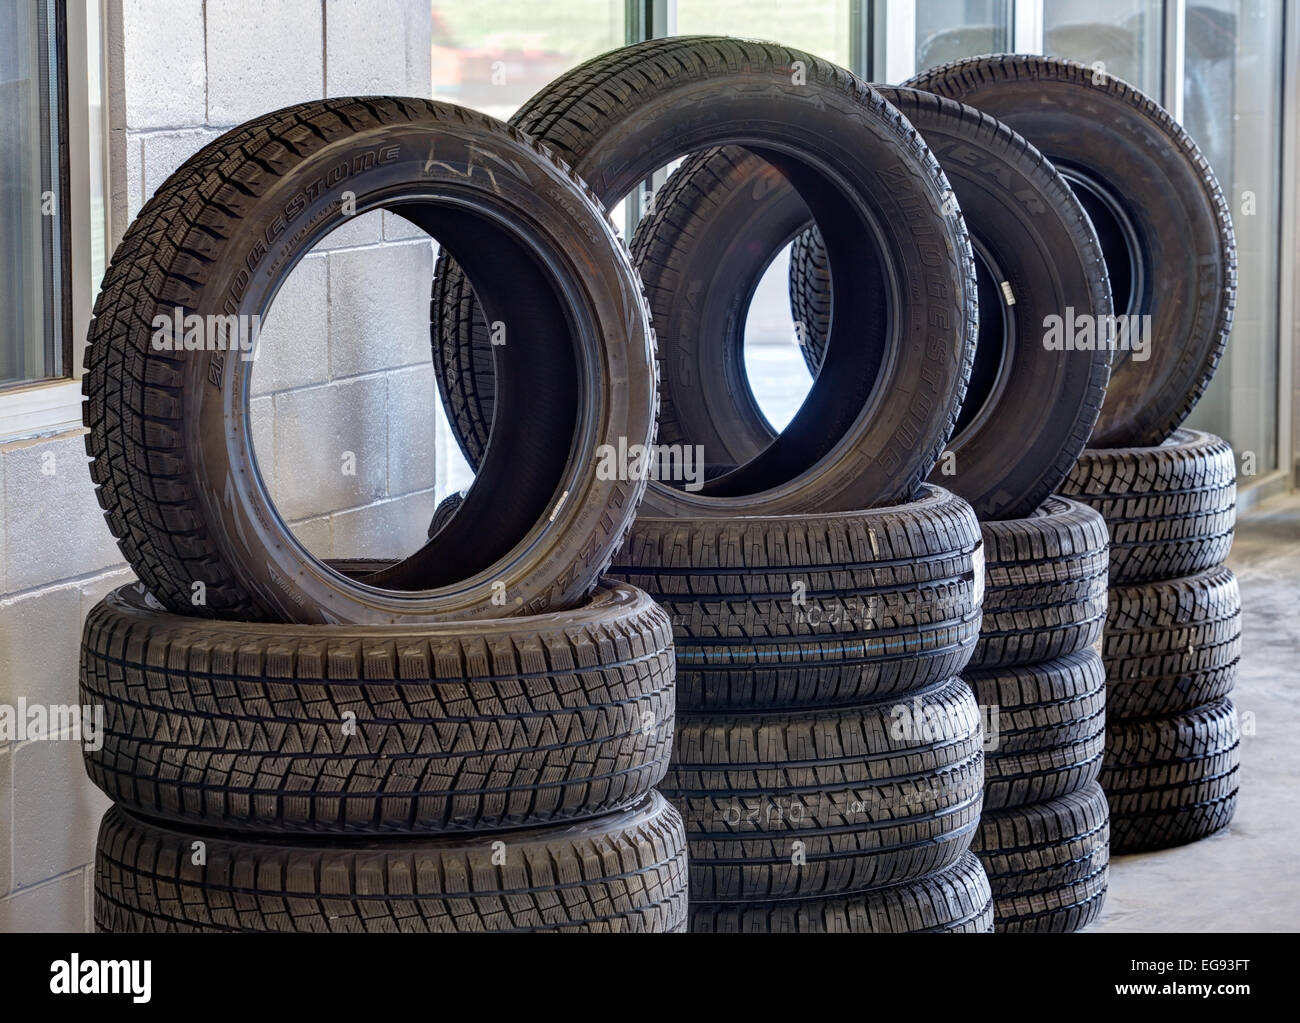 Stapel von Reifen, mit Laufflächenprofile für verschiedene Fahrsituationen, zum Verkauf in eine Kfz-Reparatur-Werkstatt. Stockfoto